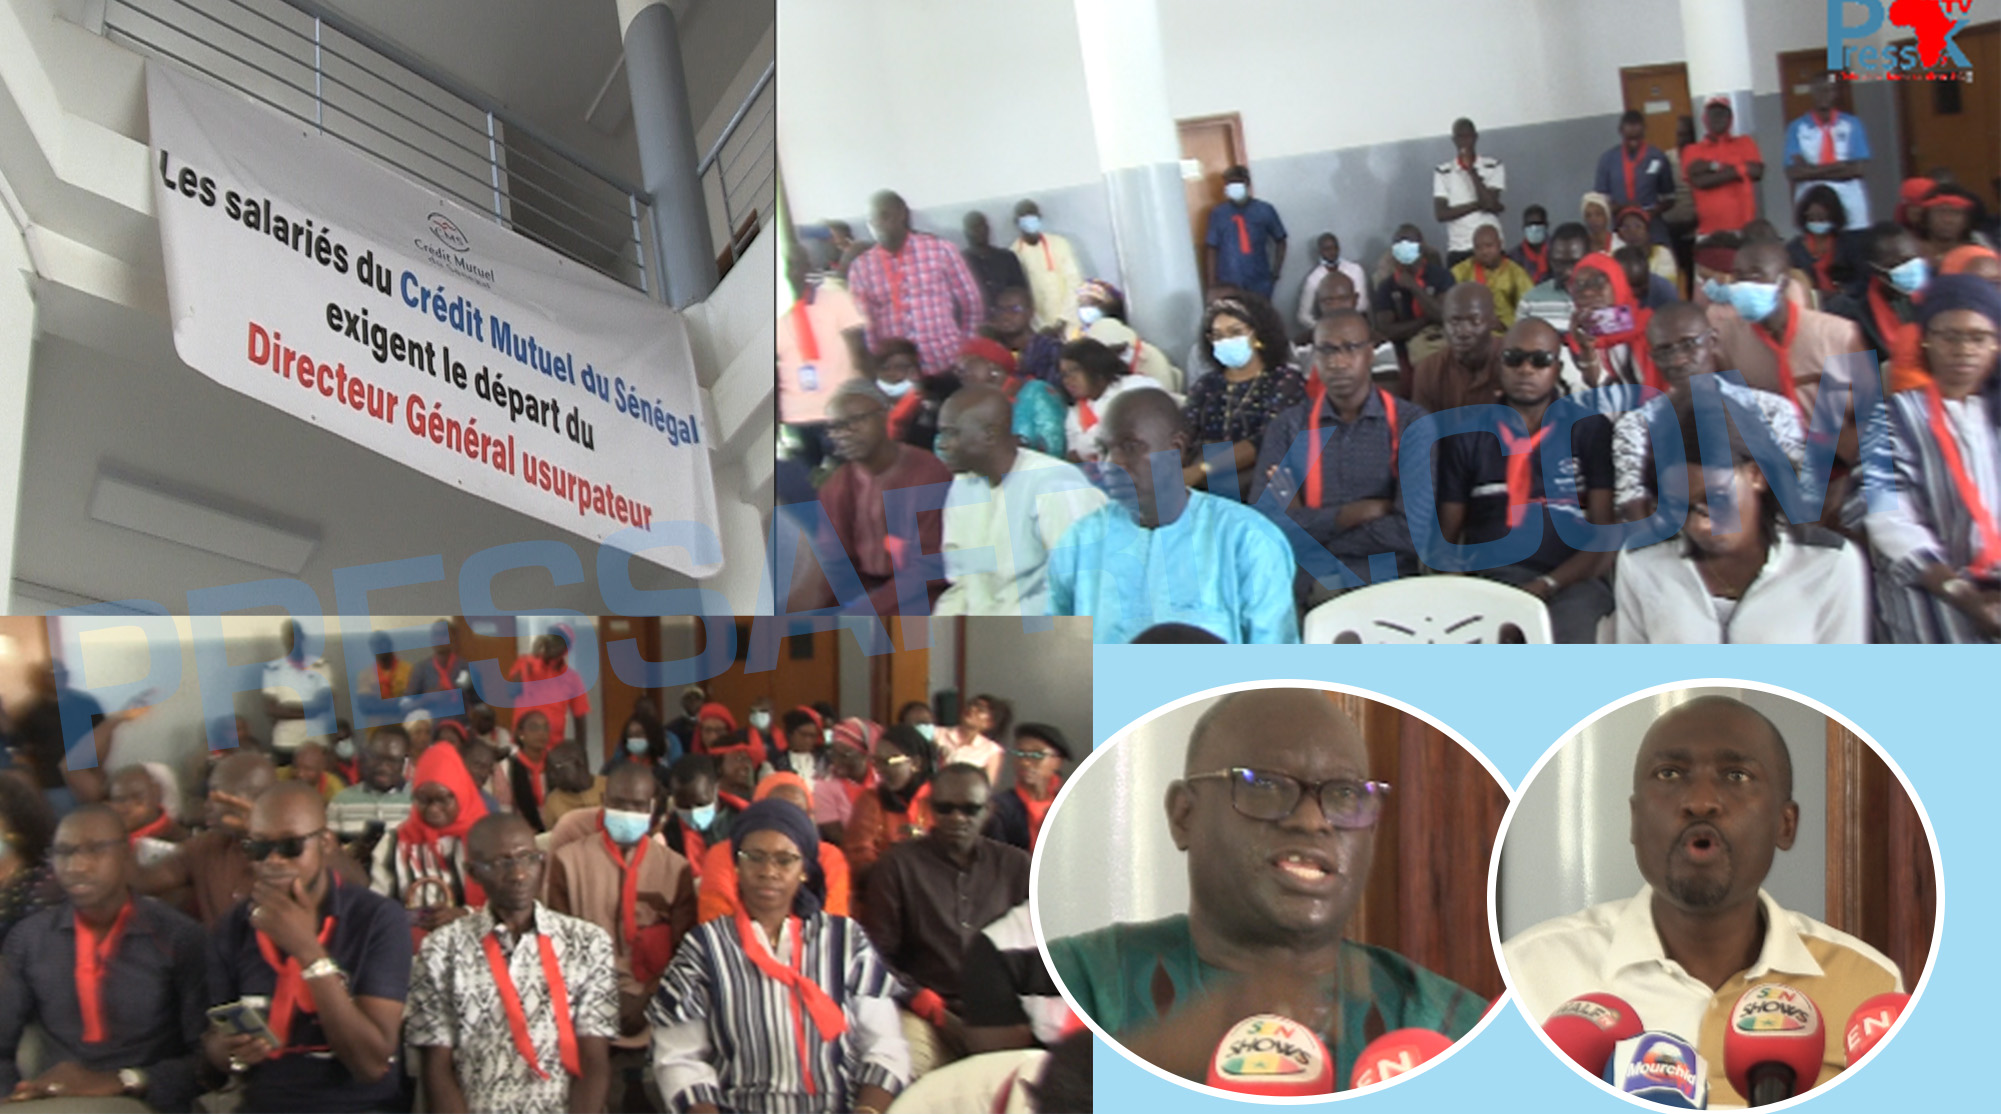 Les salariés du Crédit Mutuel du Sénégal exigent le départ de leur directeur général 